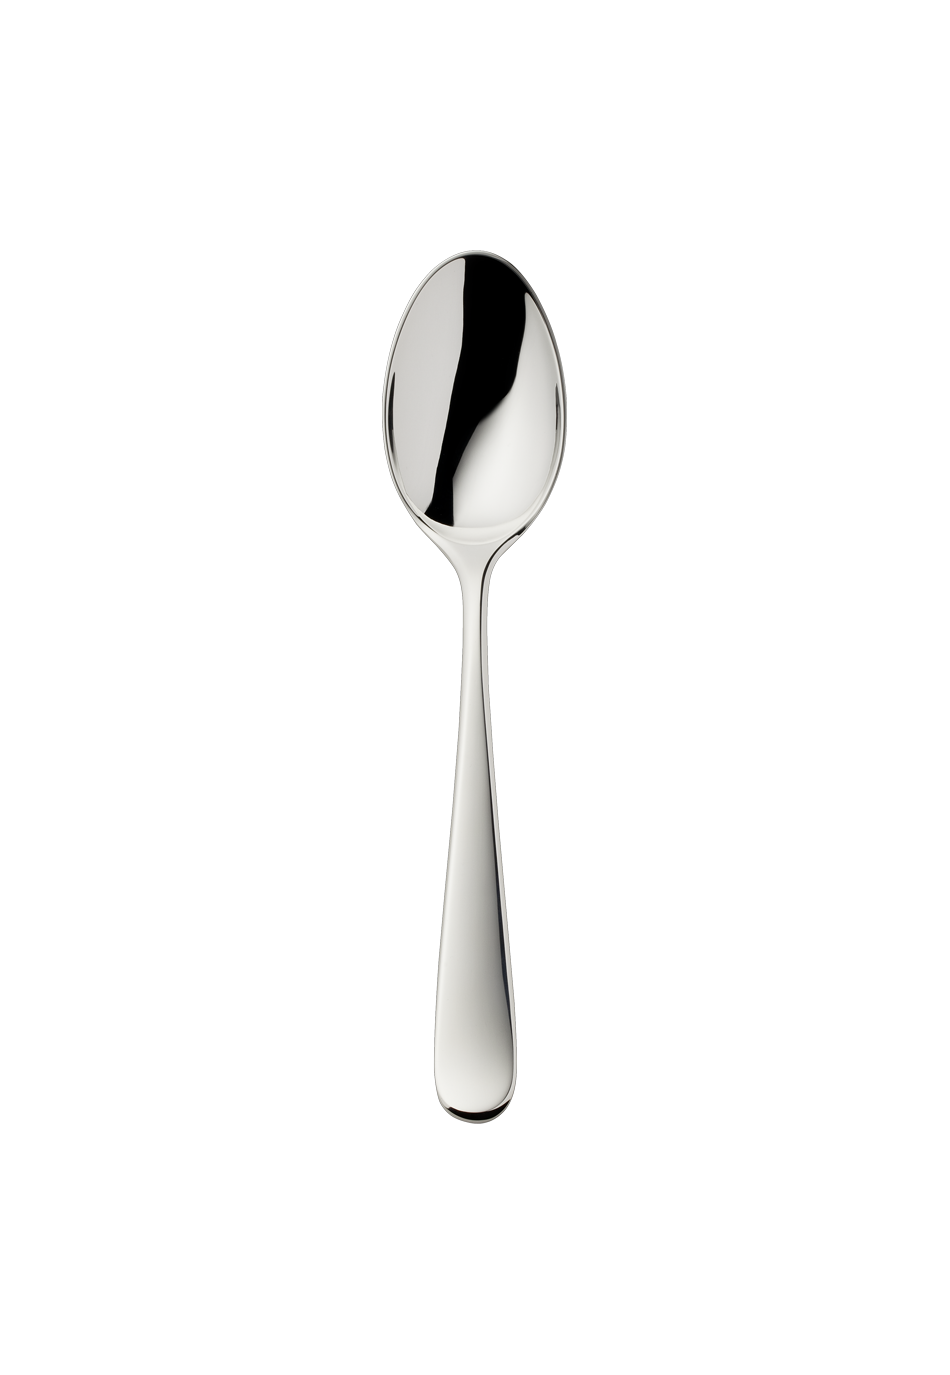 Dante Dessert Spoon (150g massive silverplated)